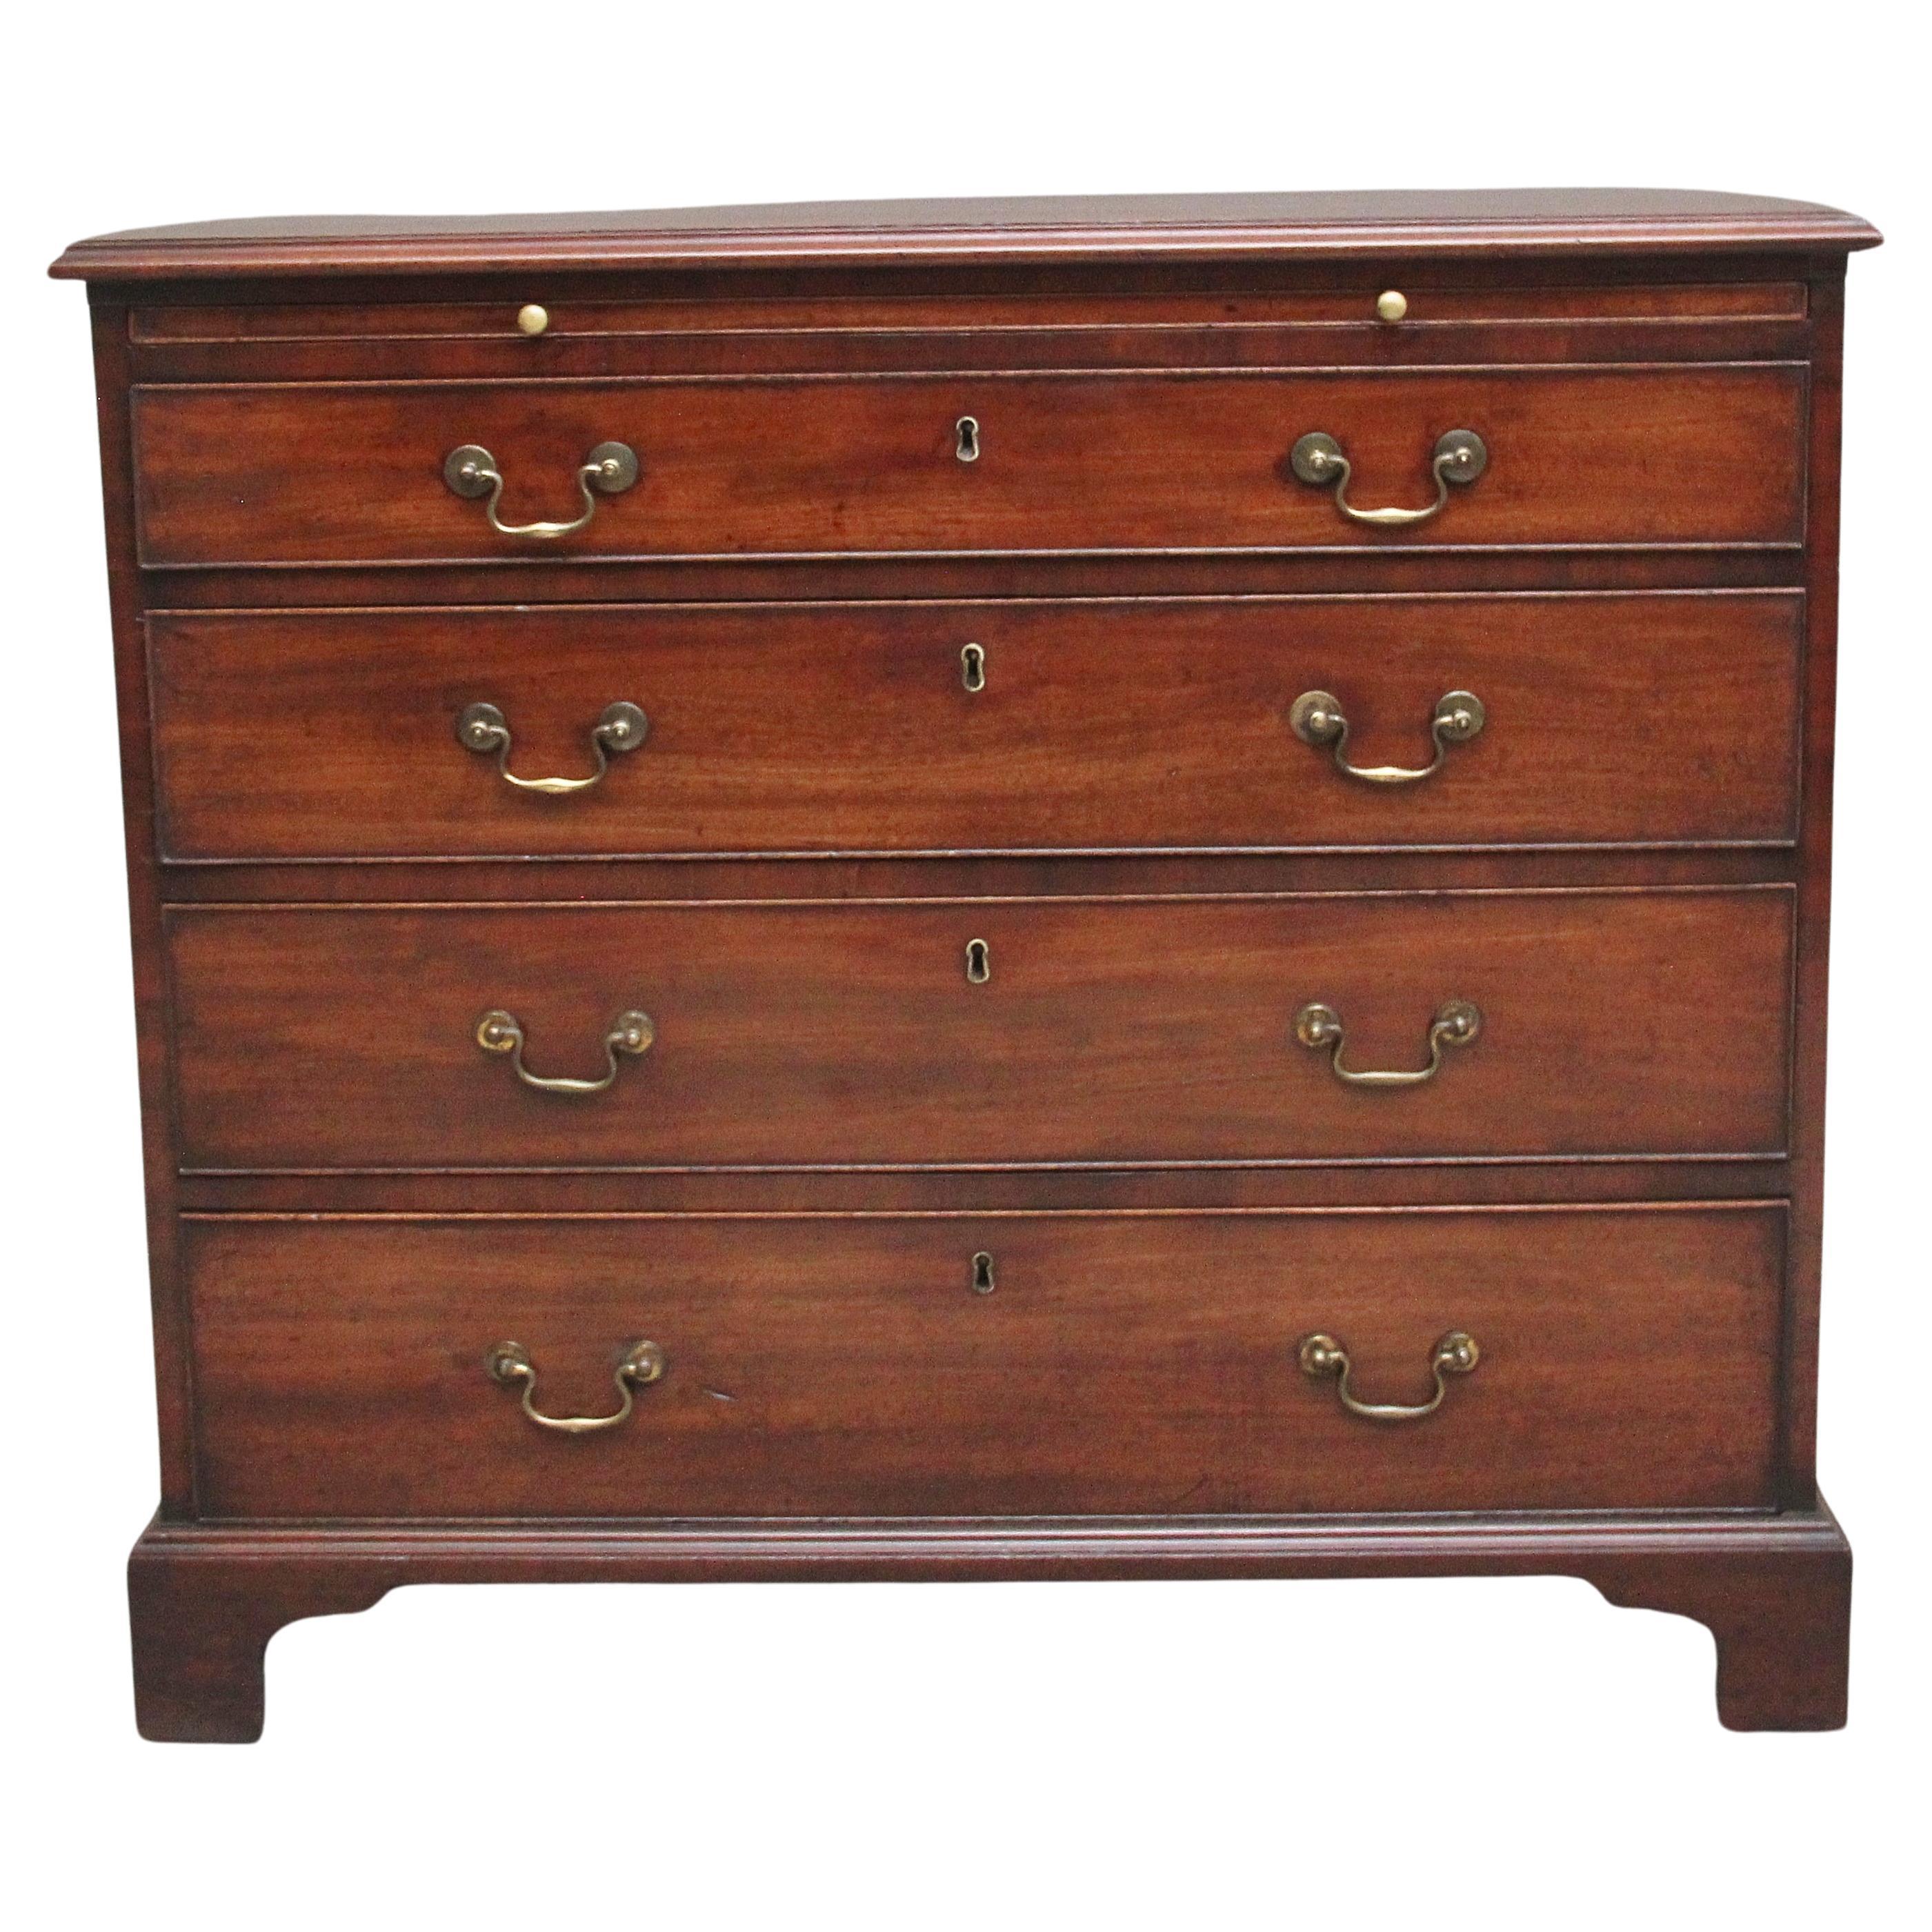 18th Century Georgian mahogany chest of drawers